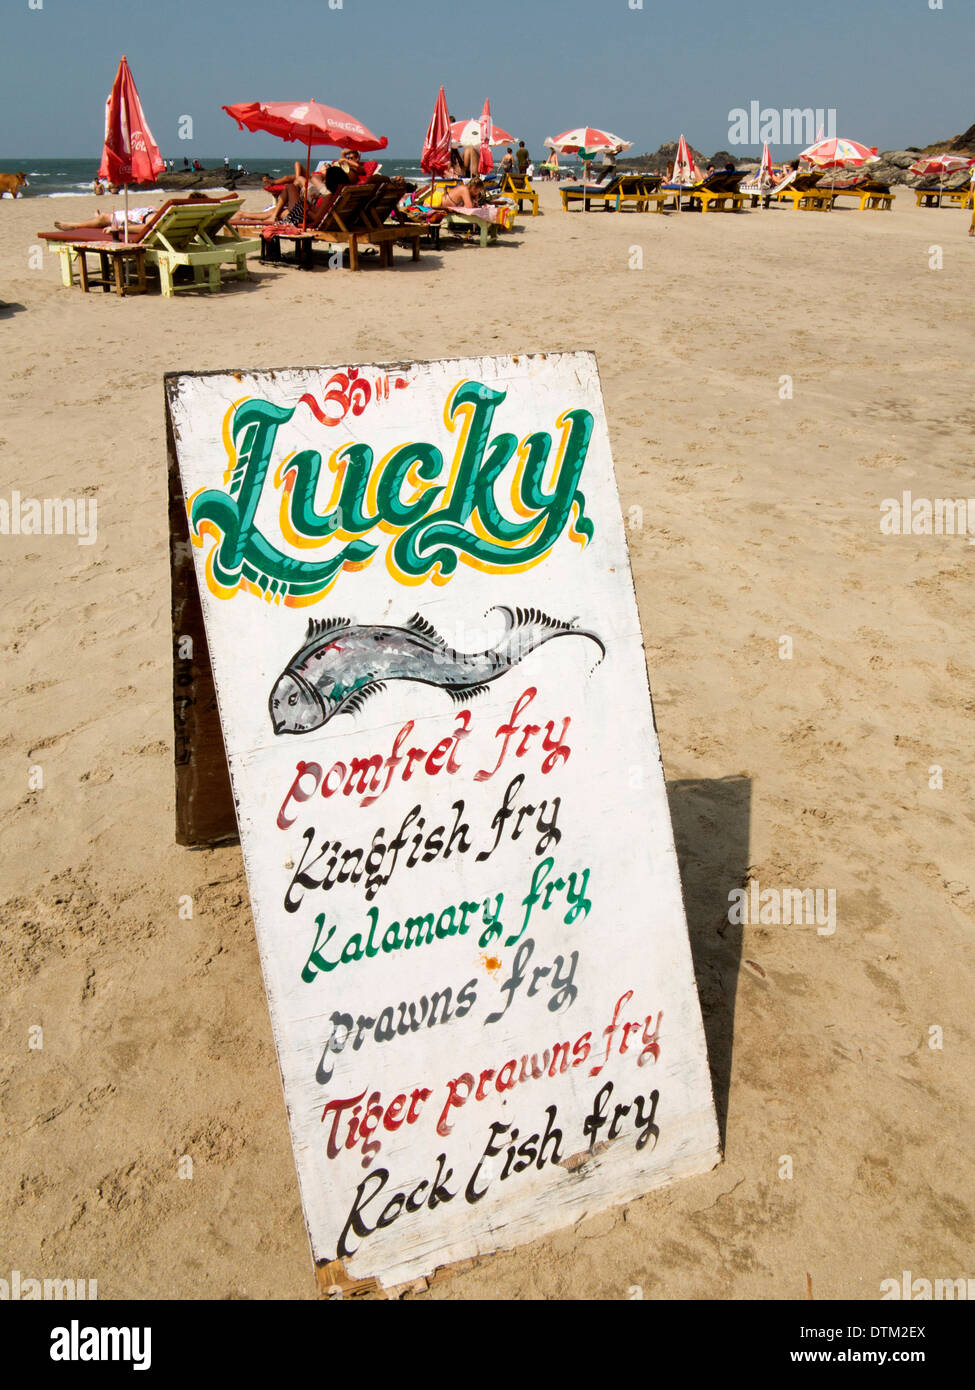 Indien, Goa, Vagator, Ozran Strand, Lucky Shack, Restaurant Schild Werbung Fischgerichte Stockfoto